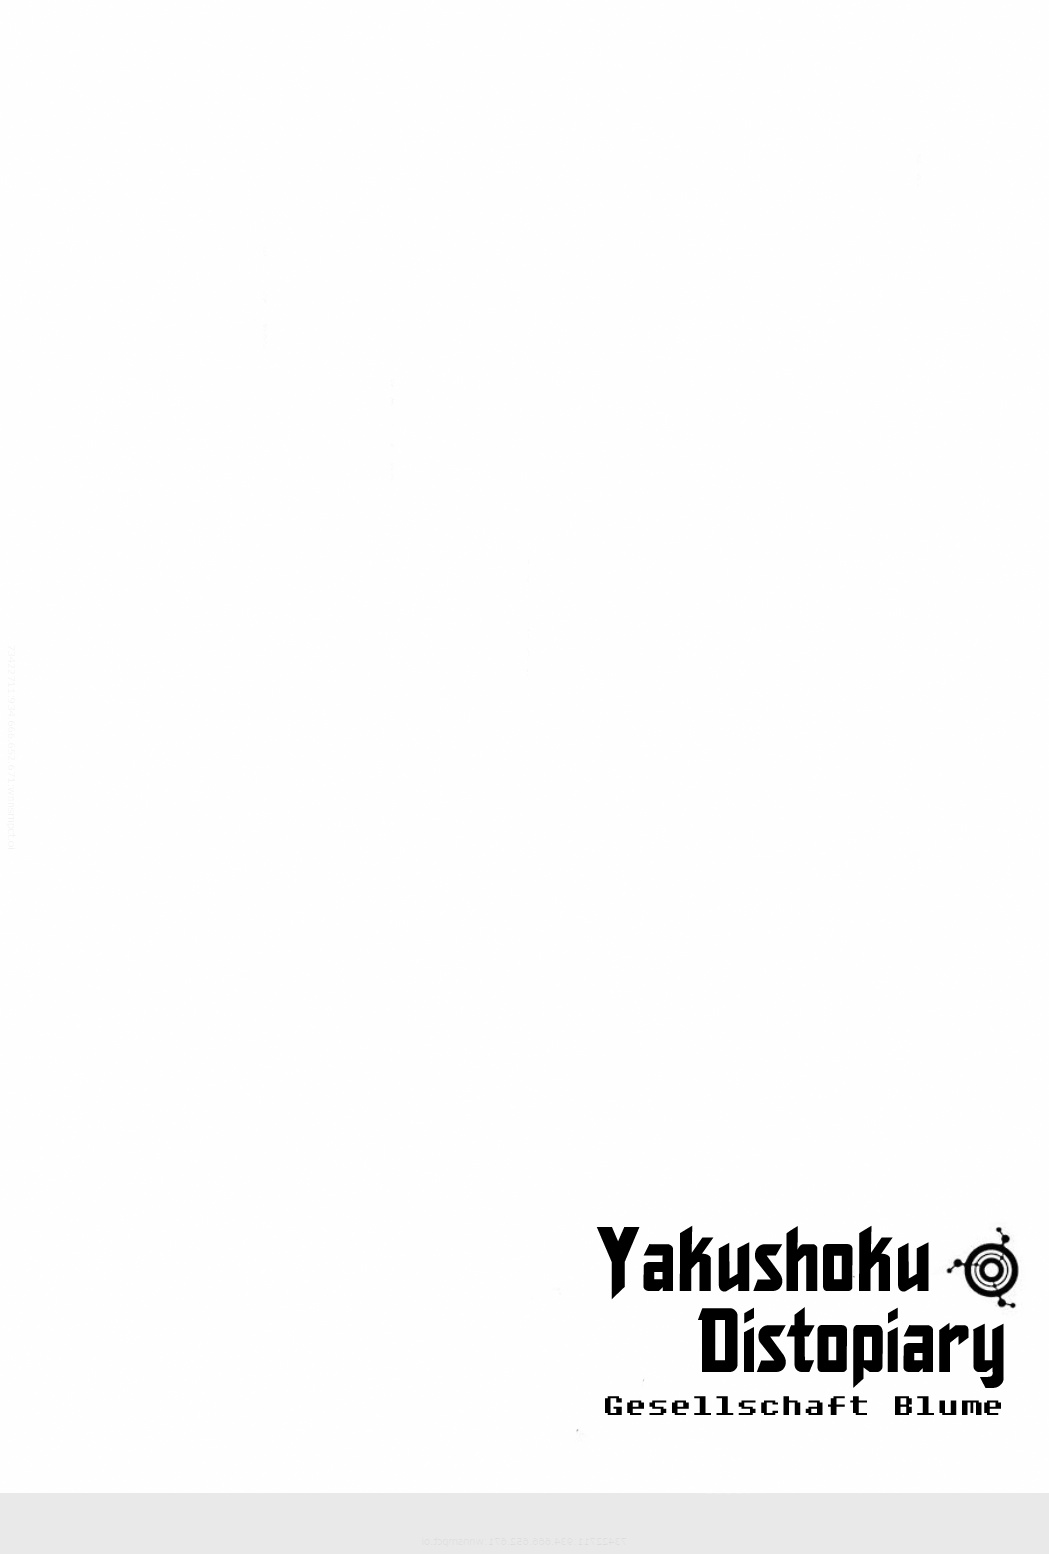 Yakushoku Distopiary - Gesellschaft Blume Chapter 4.05 #4